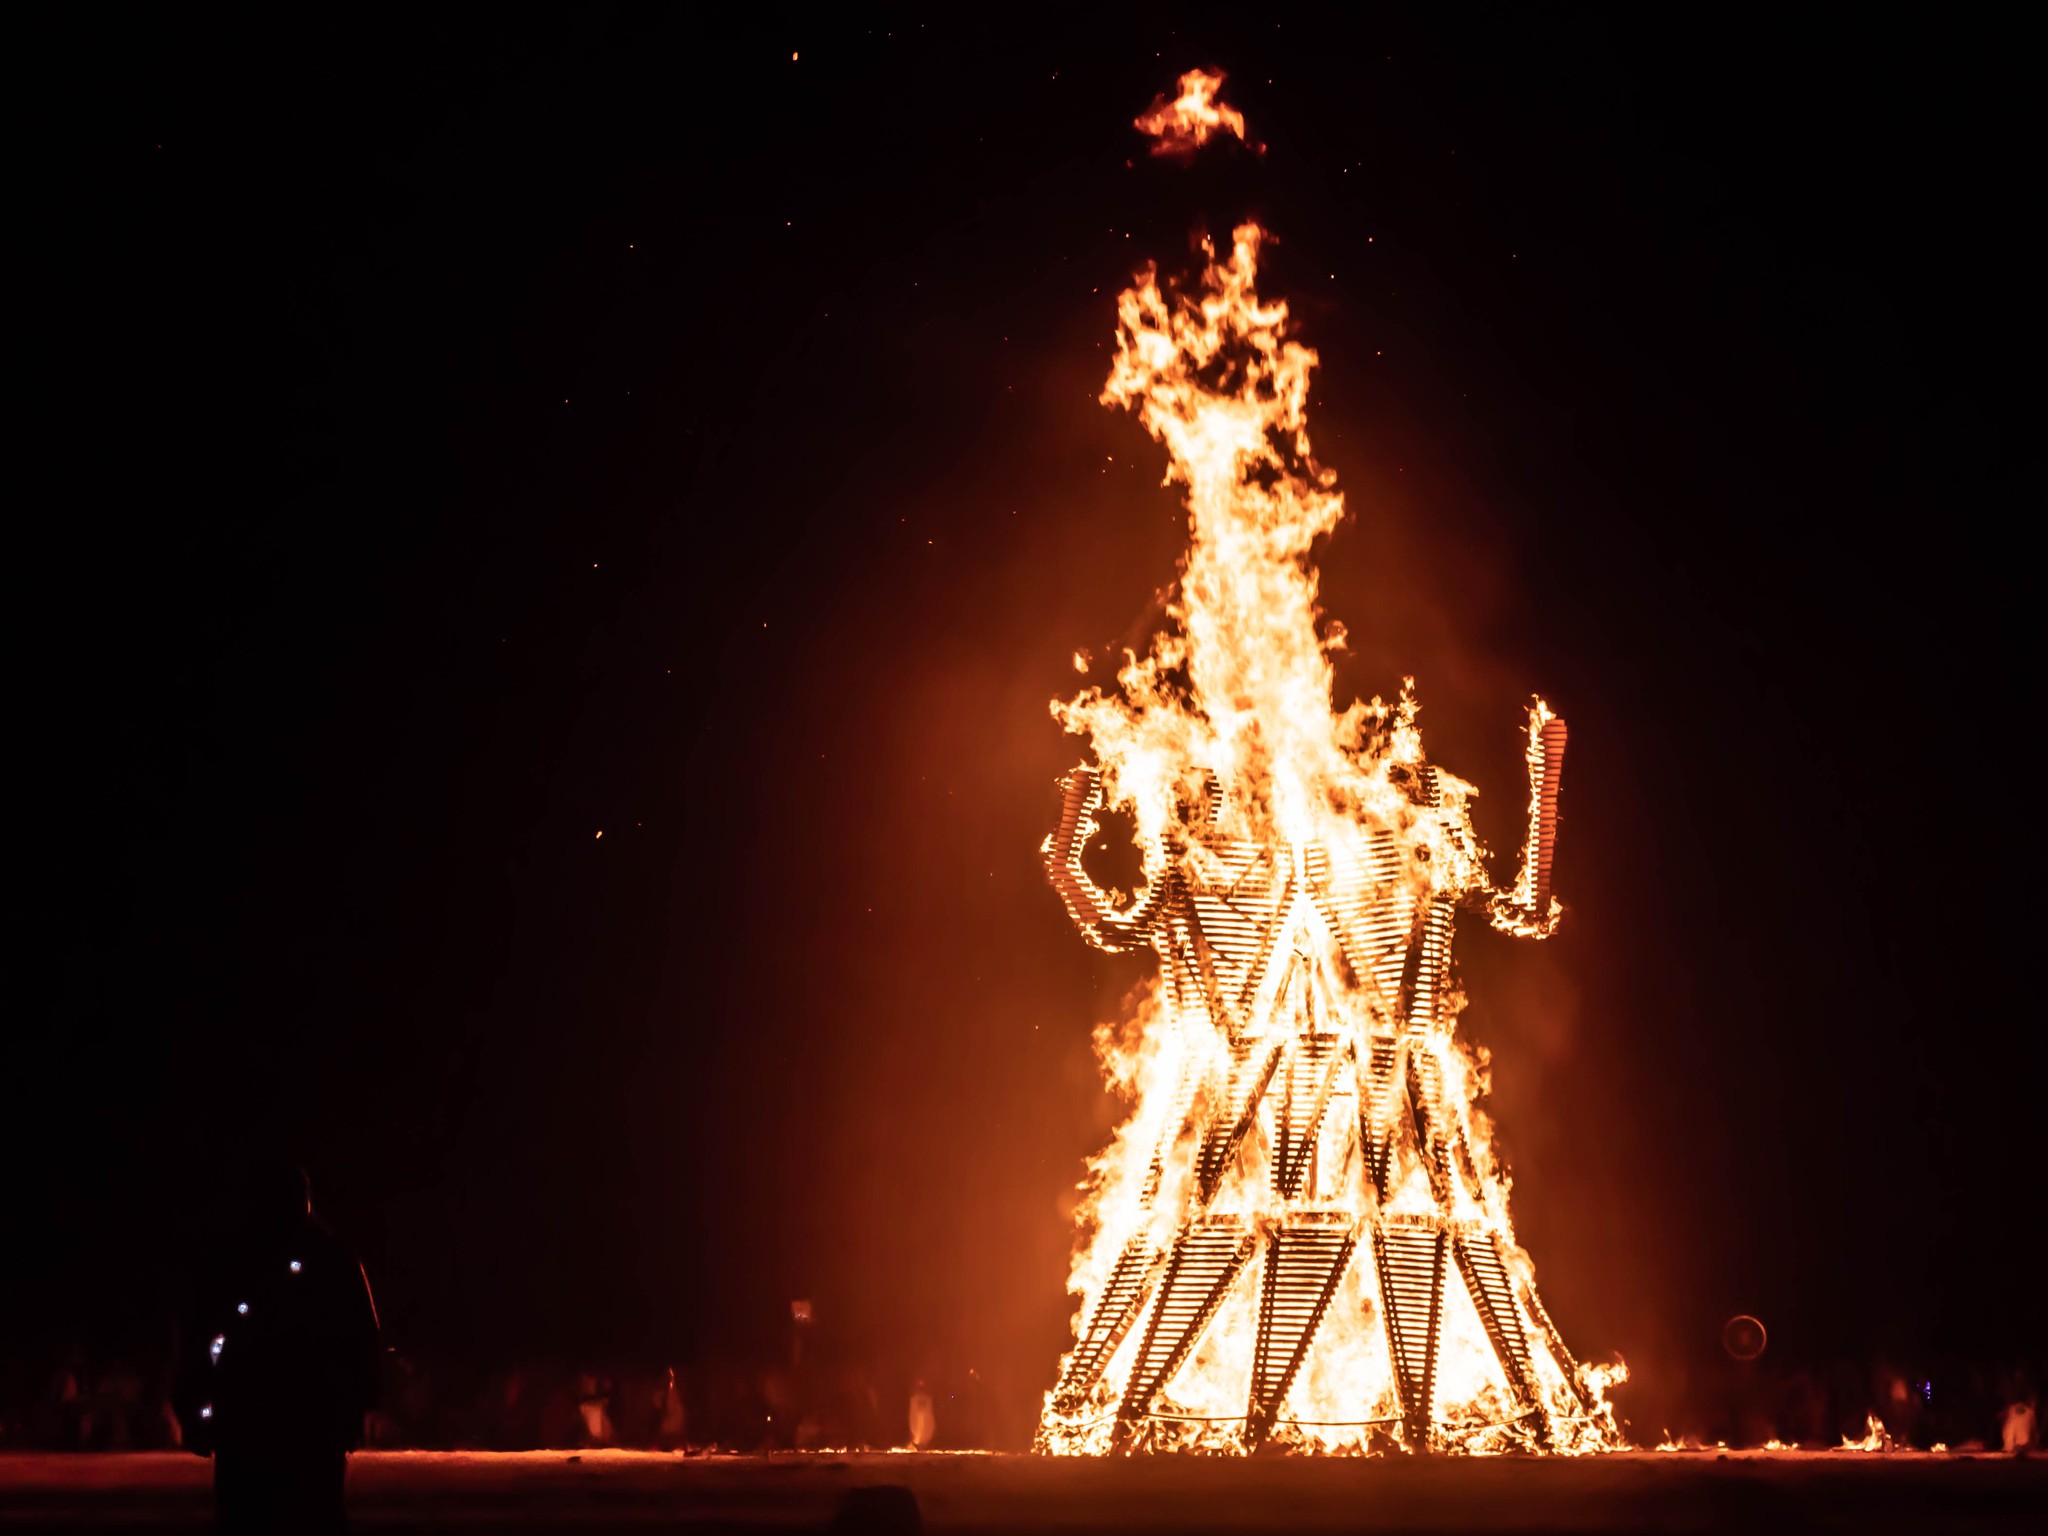 Het brandende ritueel is een spectaculair gezicht om te zien | Fotocredits: David Gwynne-Evans